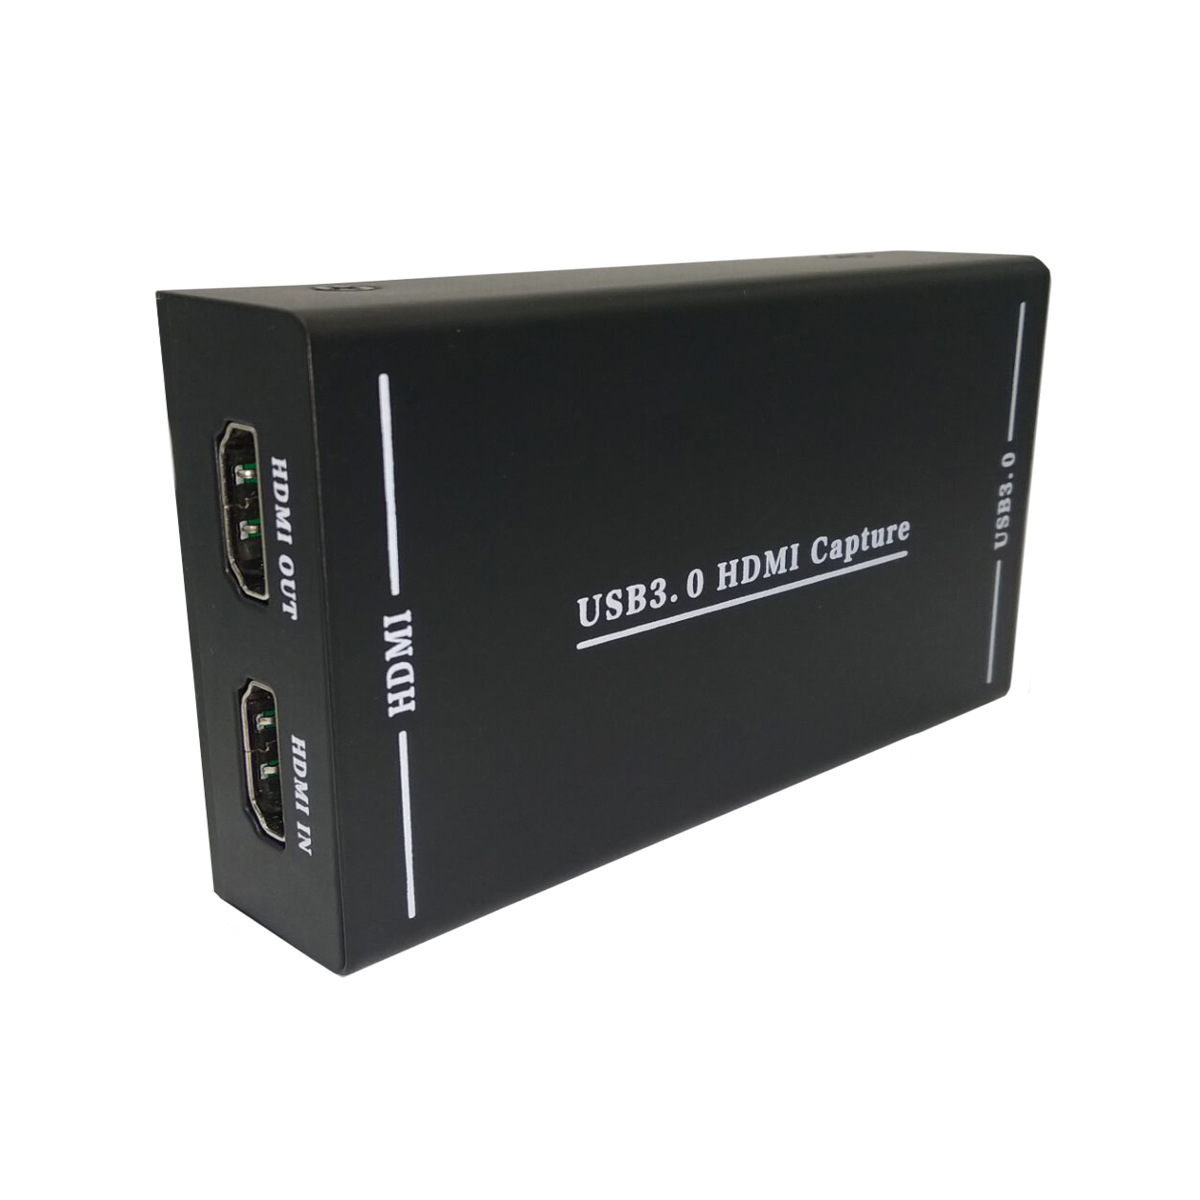 Thiết bị livestream capture Promax V290 chuyển đổi Input HDMI sang đầu USB 3.0, có đầu MIC